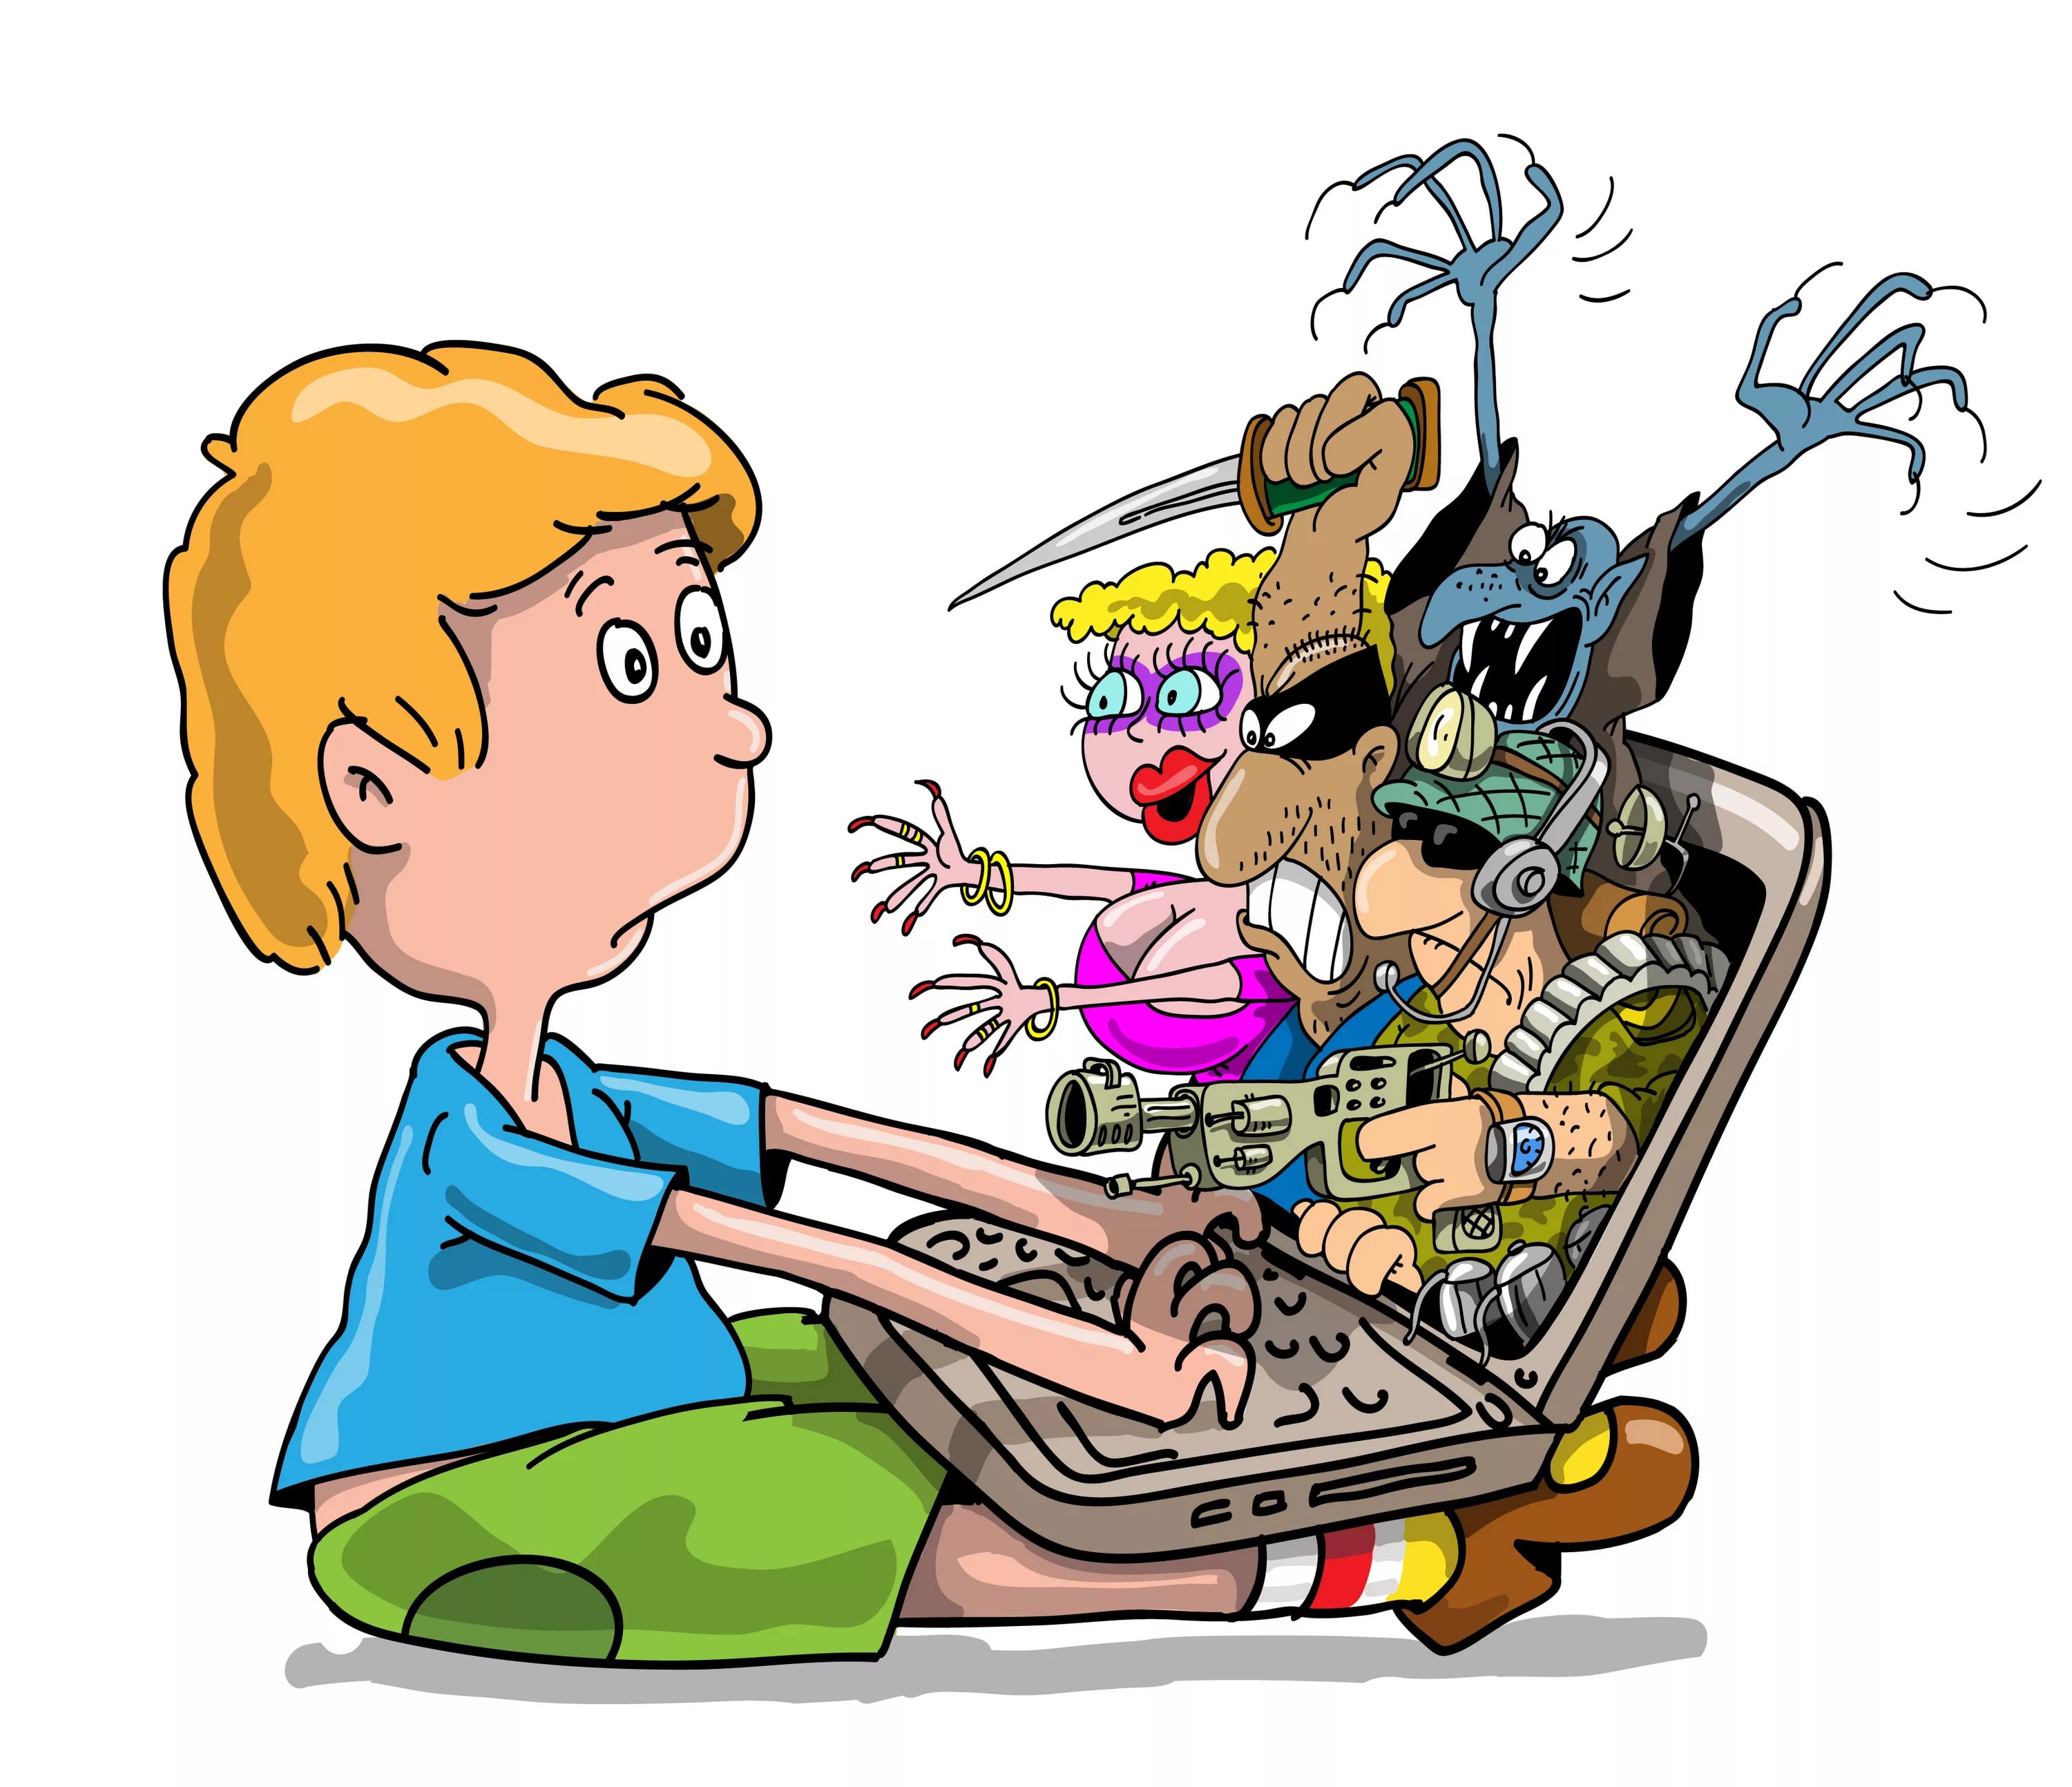 Про опасные игры. Дети компьютер арт. Компьютер иллюстрация. Опасности в интернете для детей. Детям об интернете.